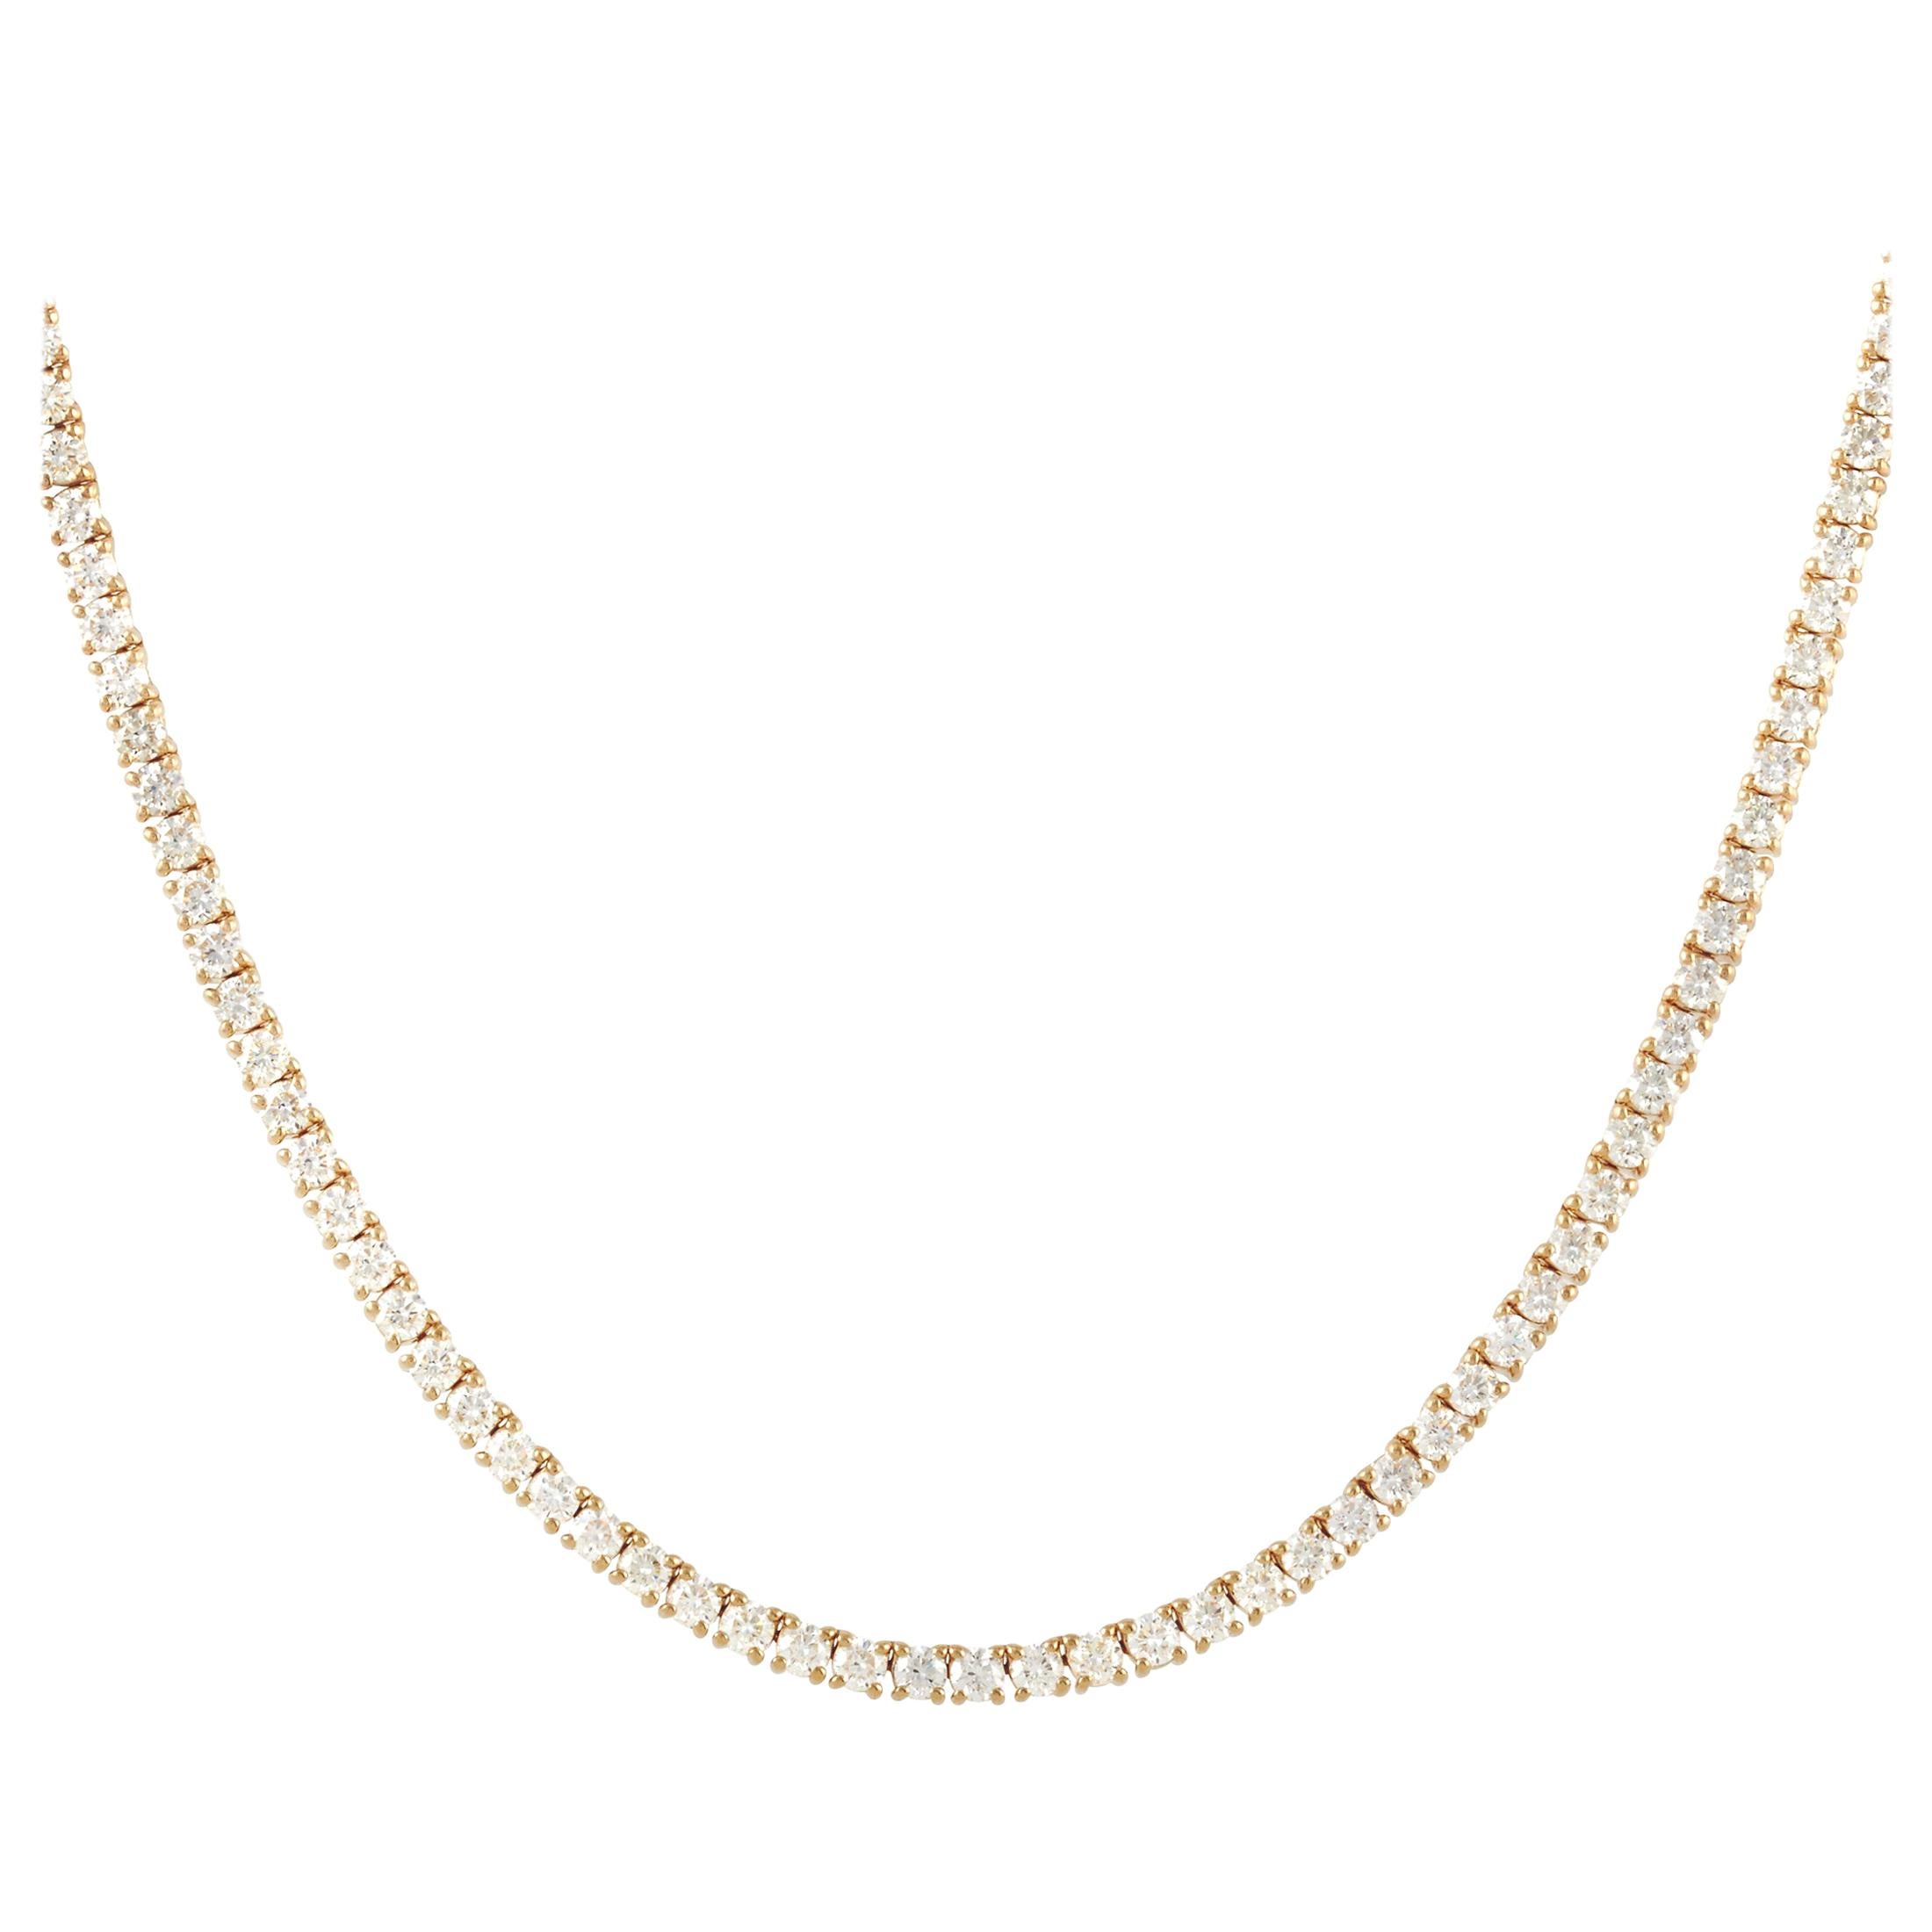 LB Exclusive 18 Karat Yellow Gold 15.69 Carat Diamond Necklace